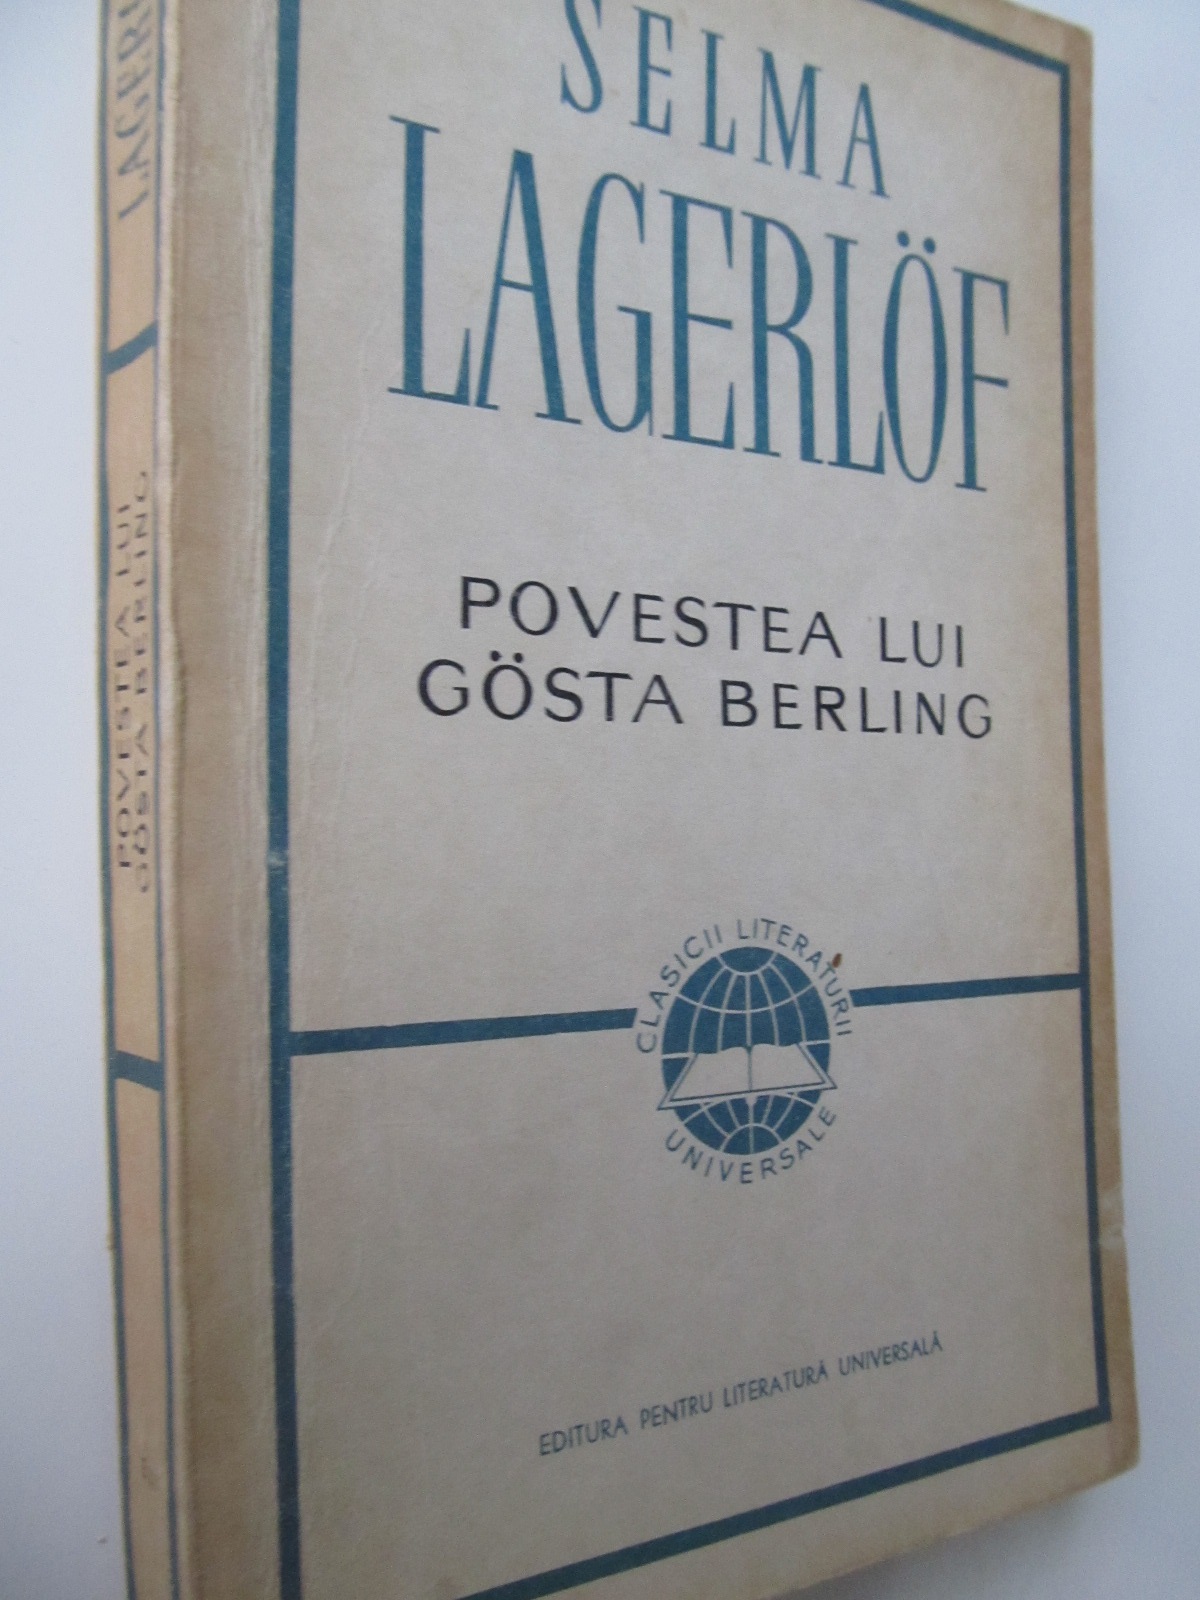 Povestea lui Gosta Berling - Selma Lagerlof | Detalii carte